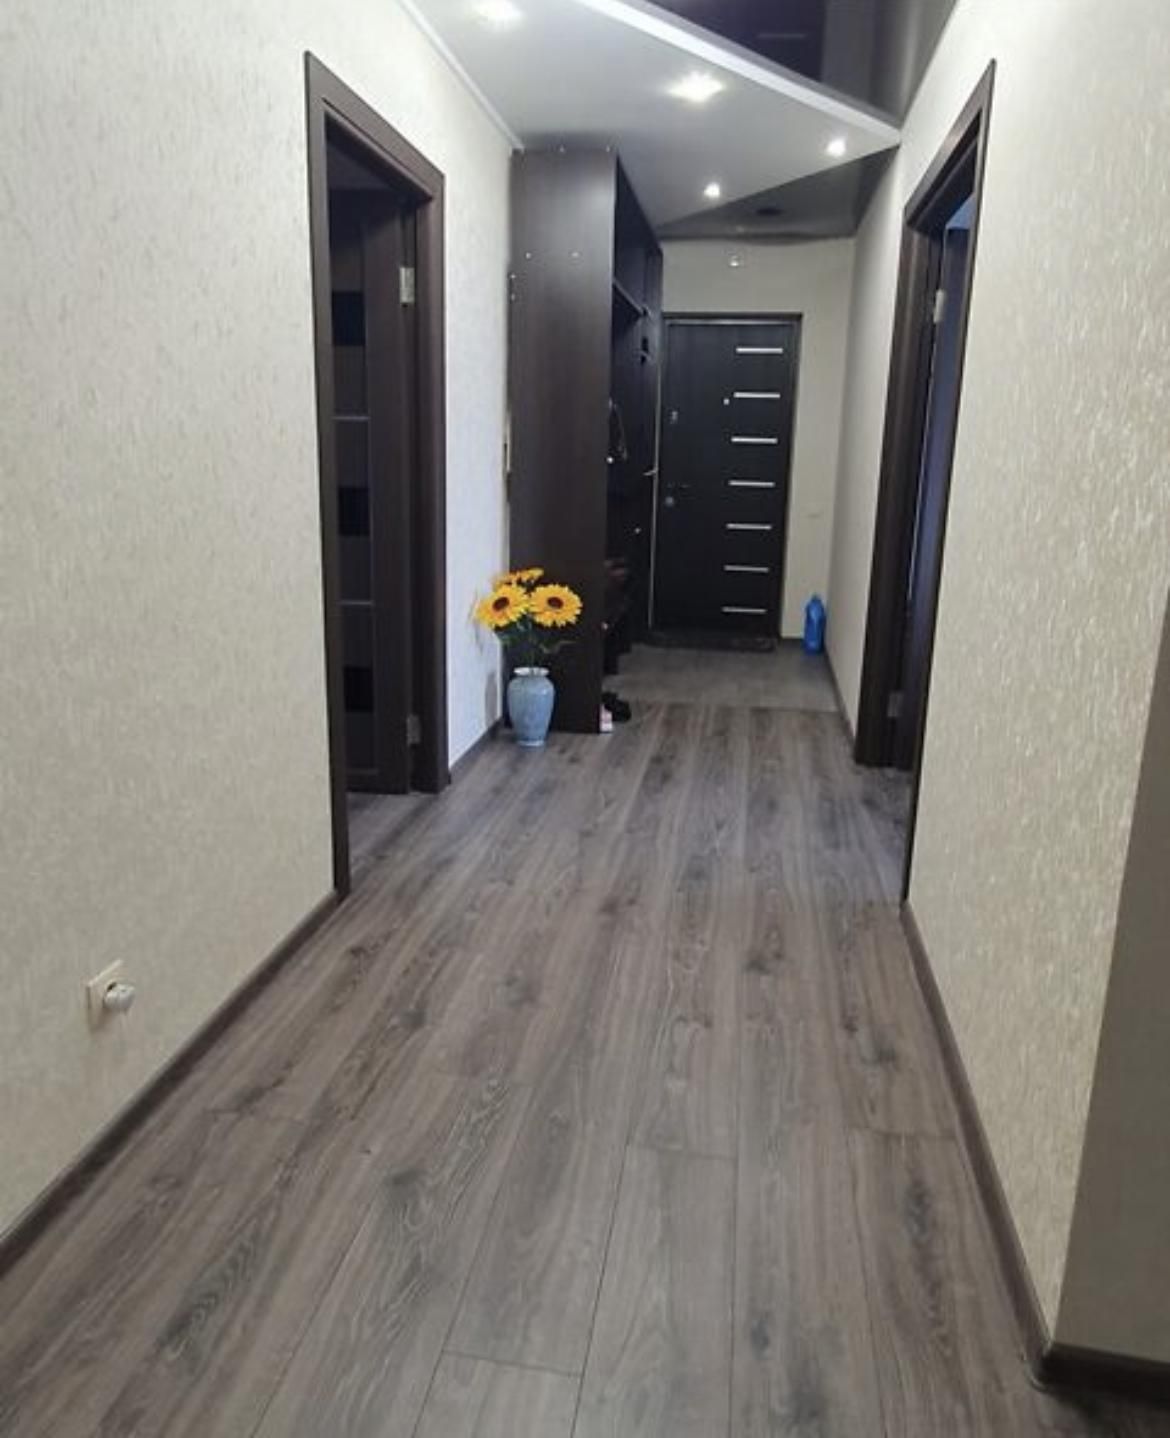 "Продаж 4-кімнатної квартири в Тернополі"